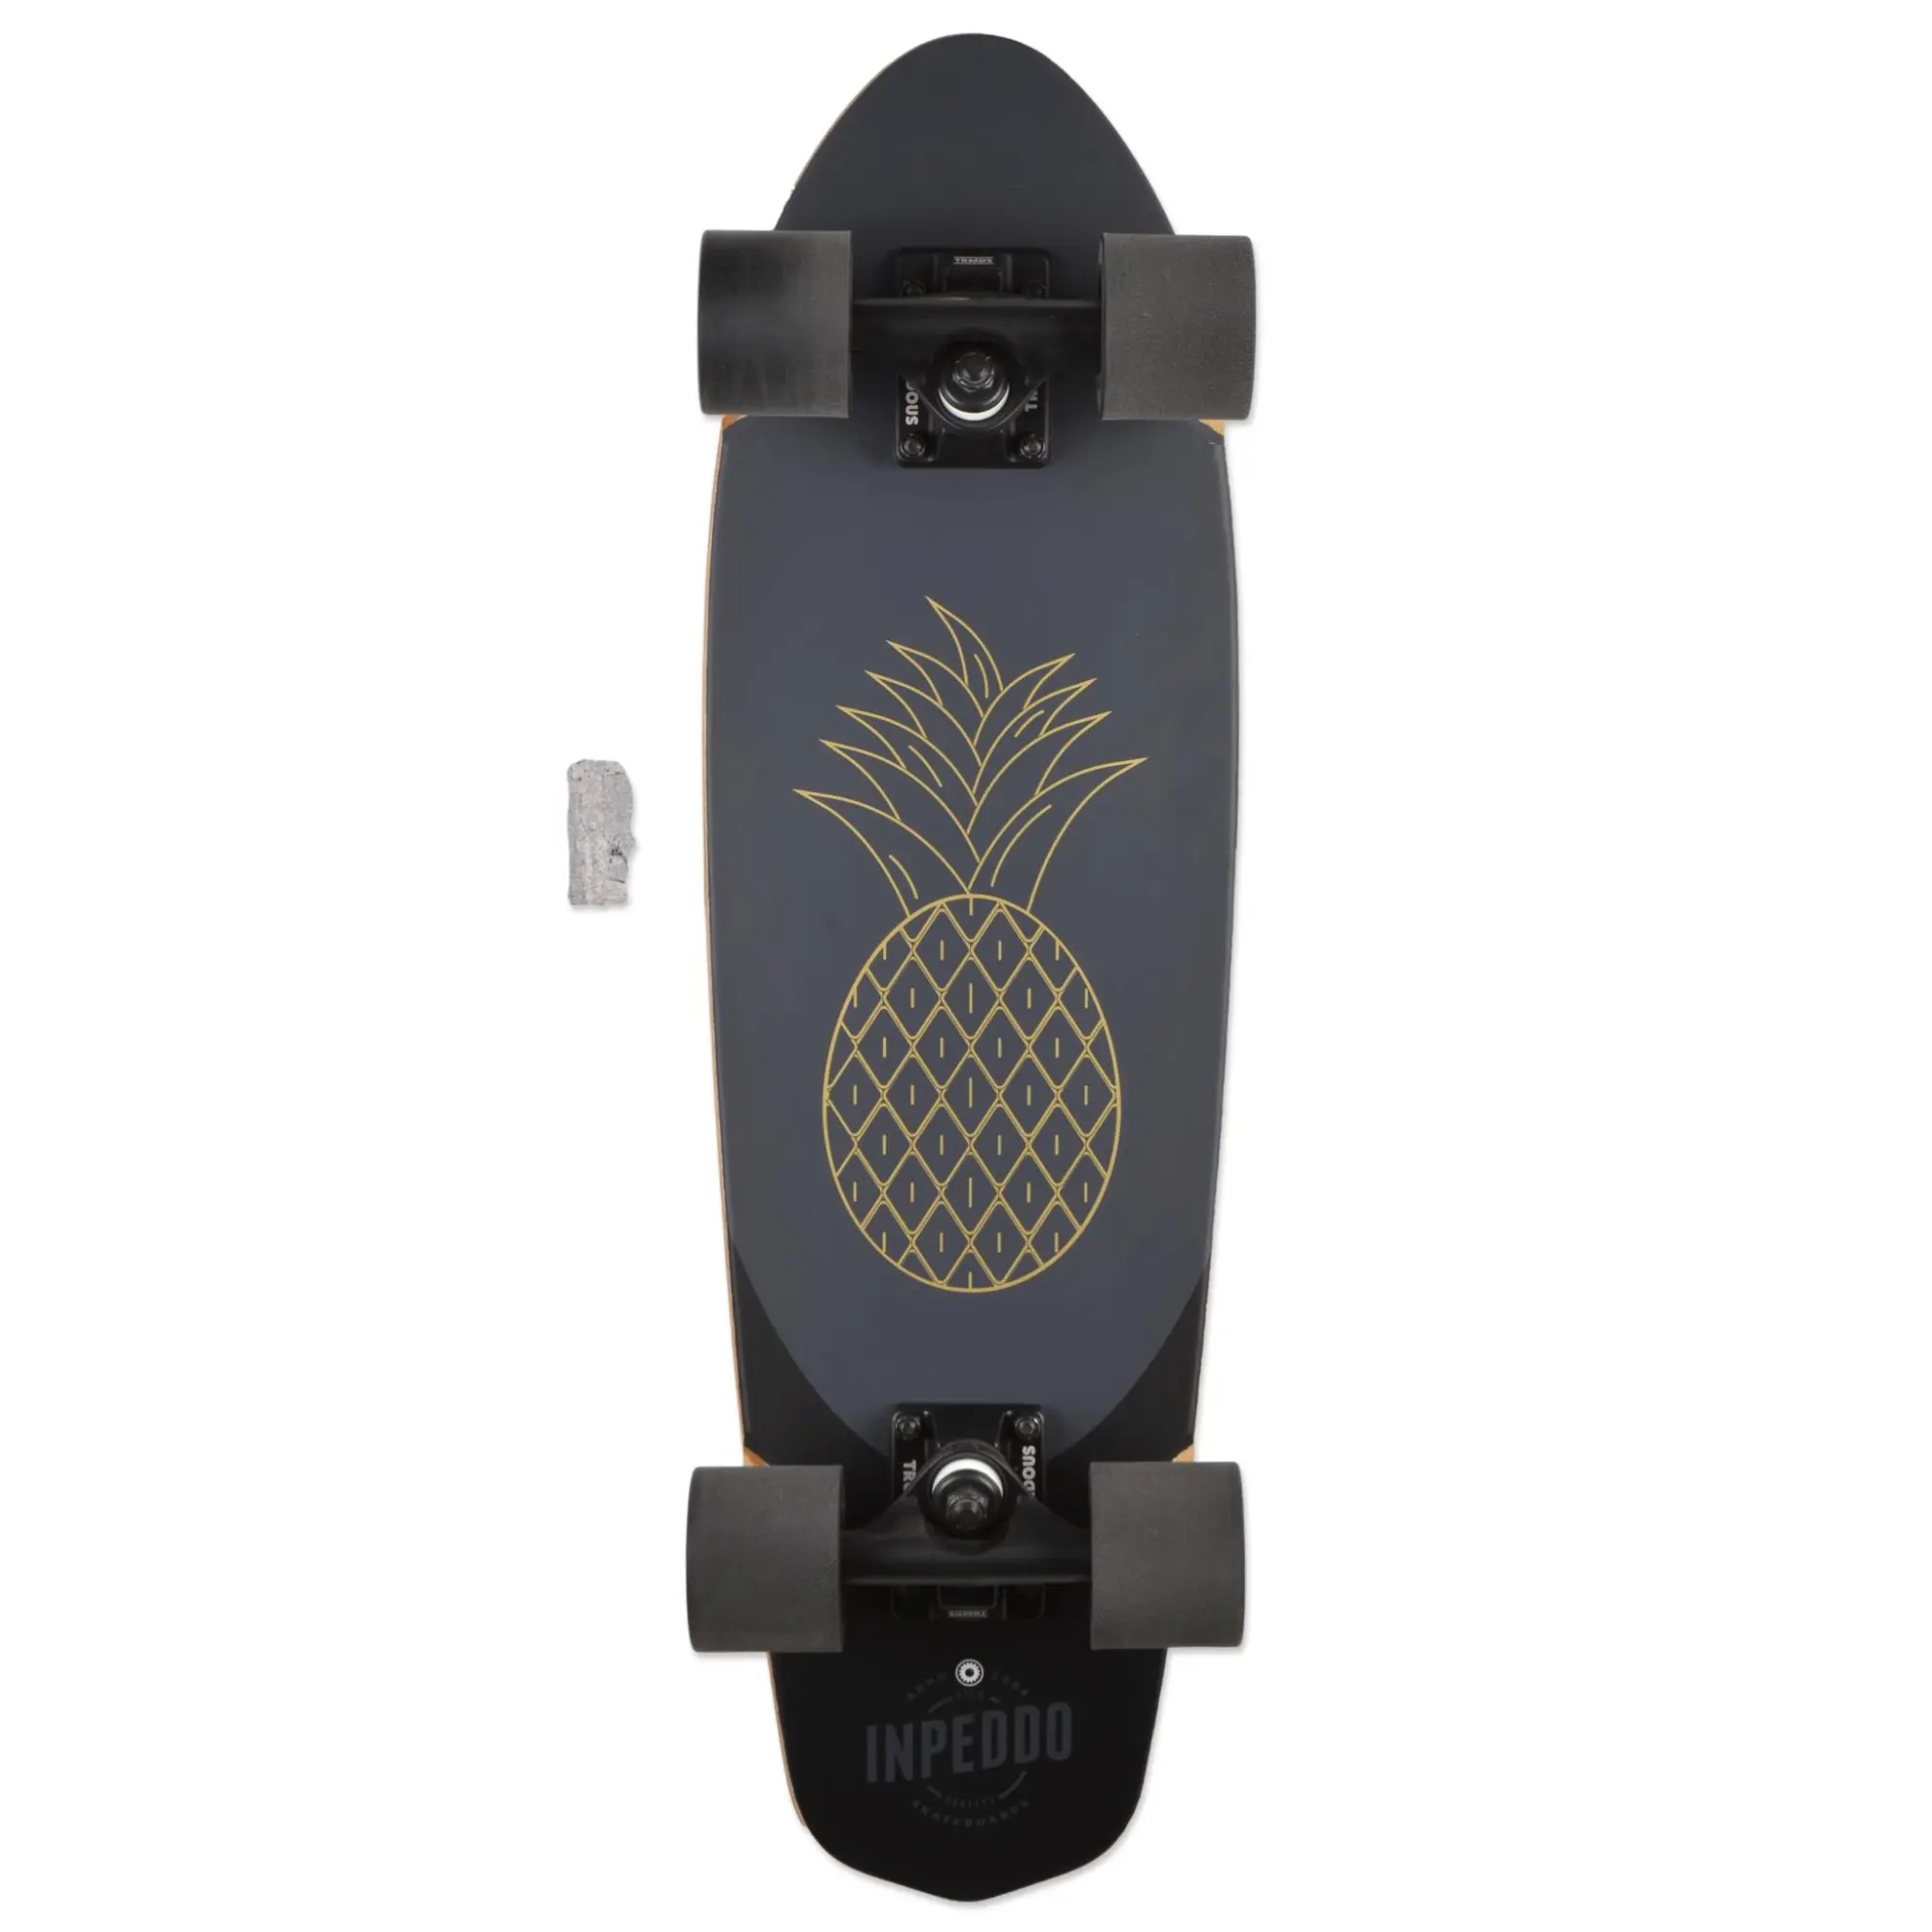 Inpeddo Cruiser Skate Pineapple 26